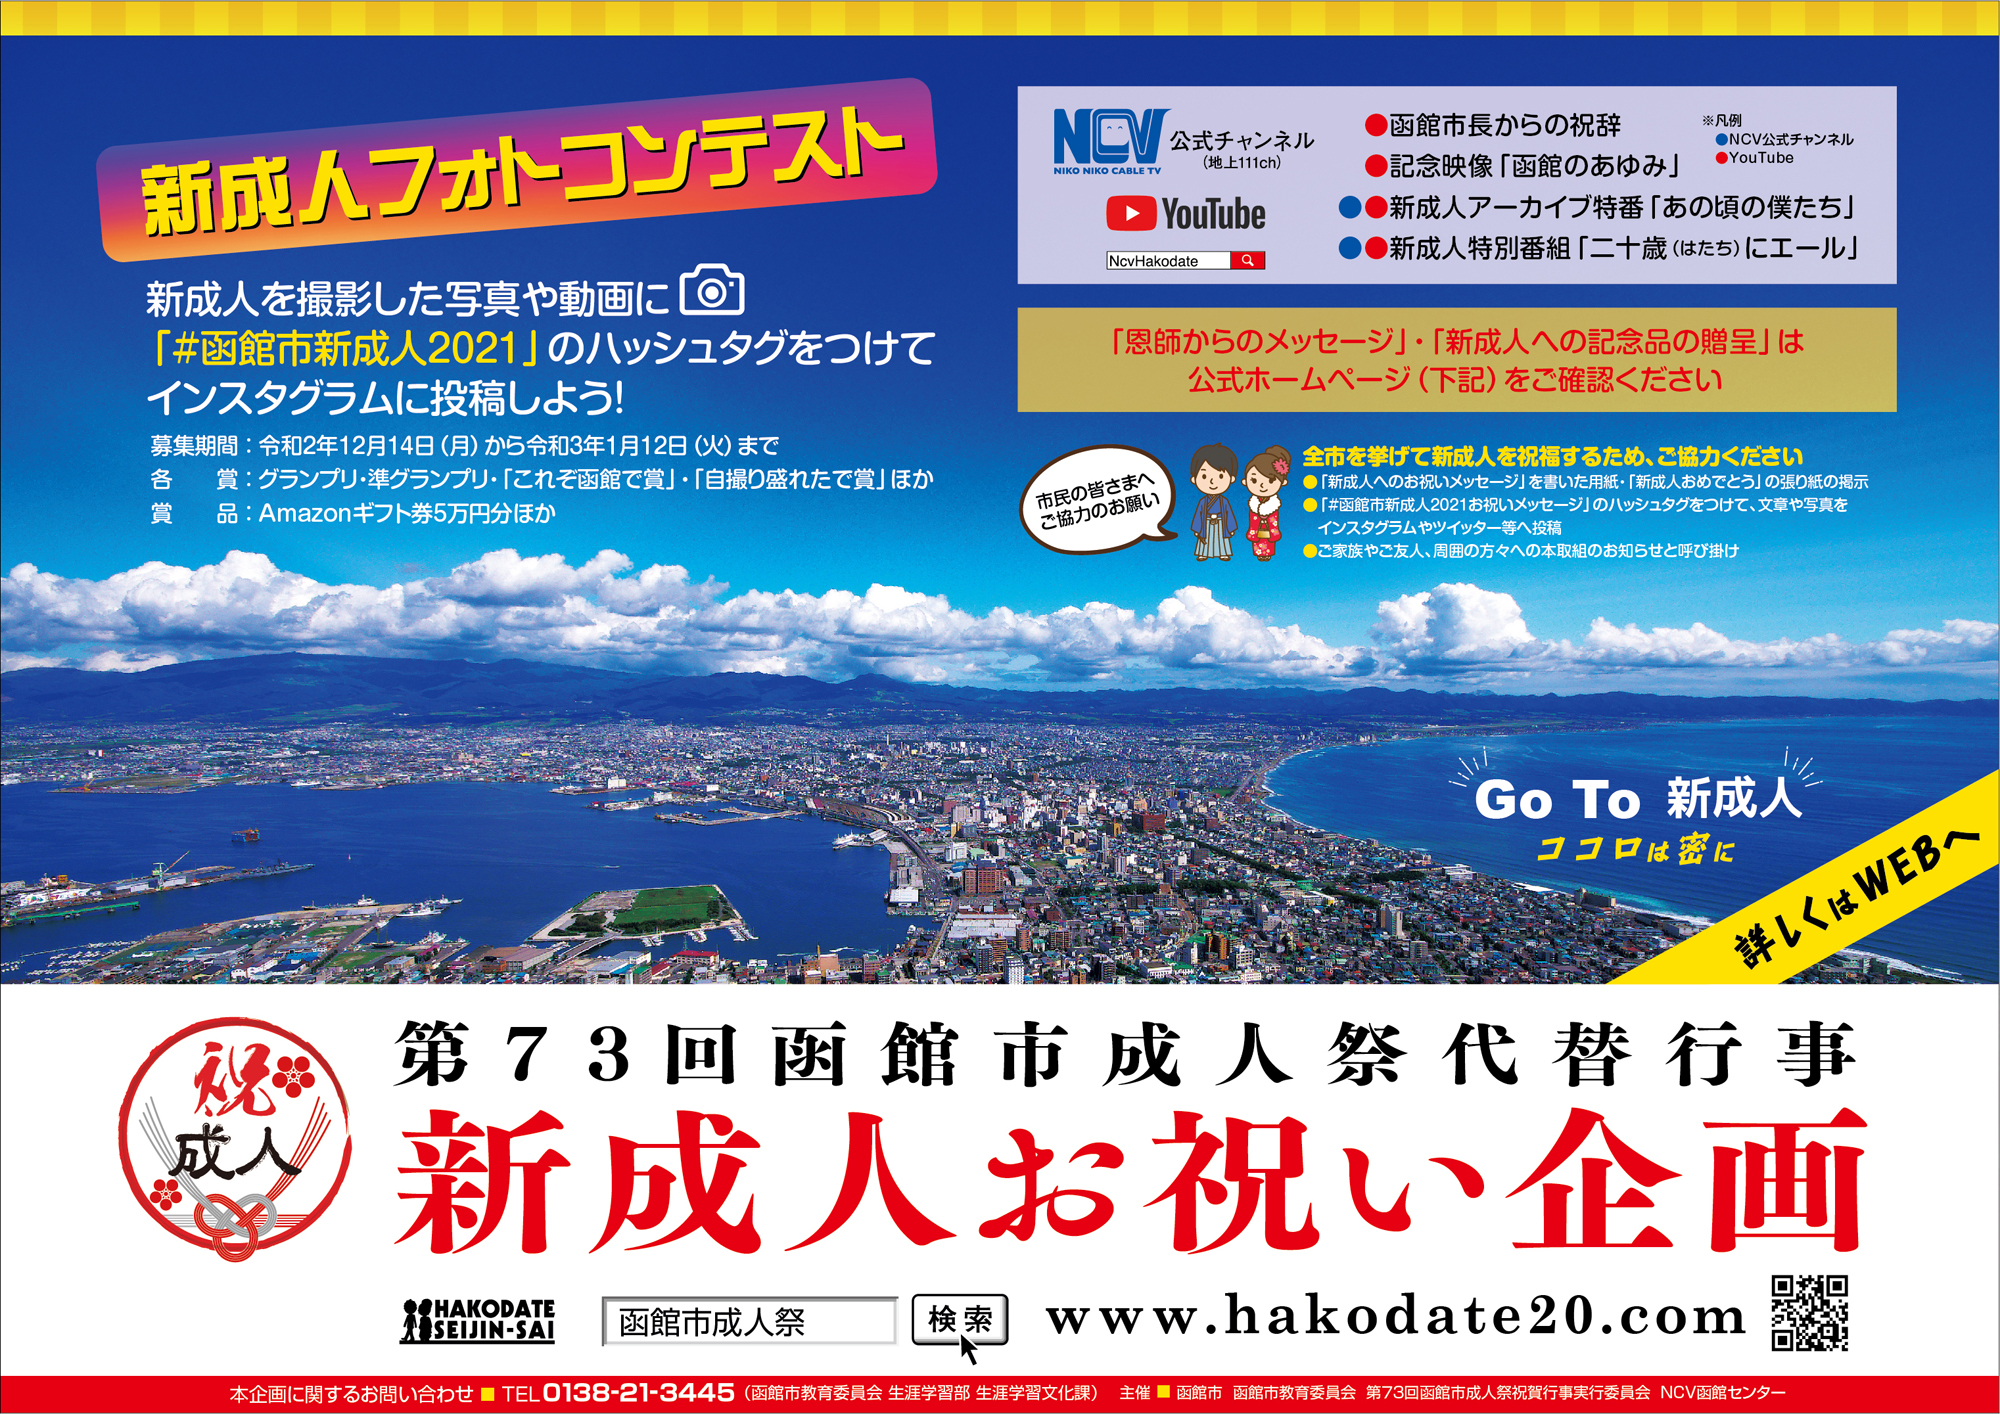 新成人お祝い企画 函館市二十歳の集い 旧 成人祭 公式ウェブサイト